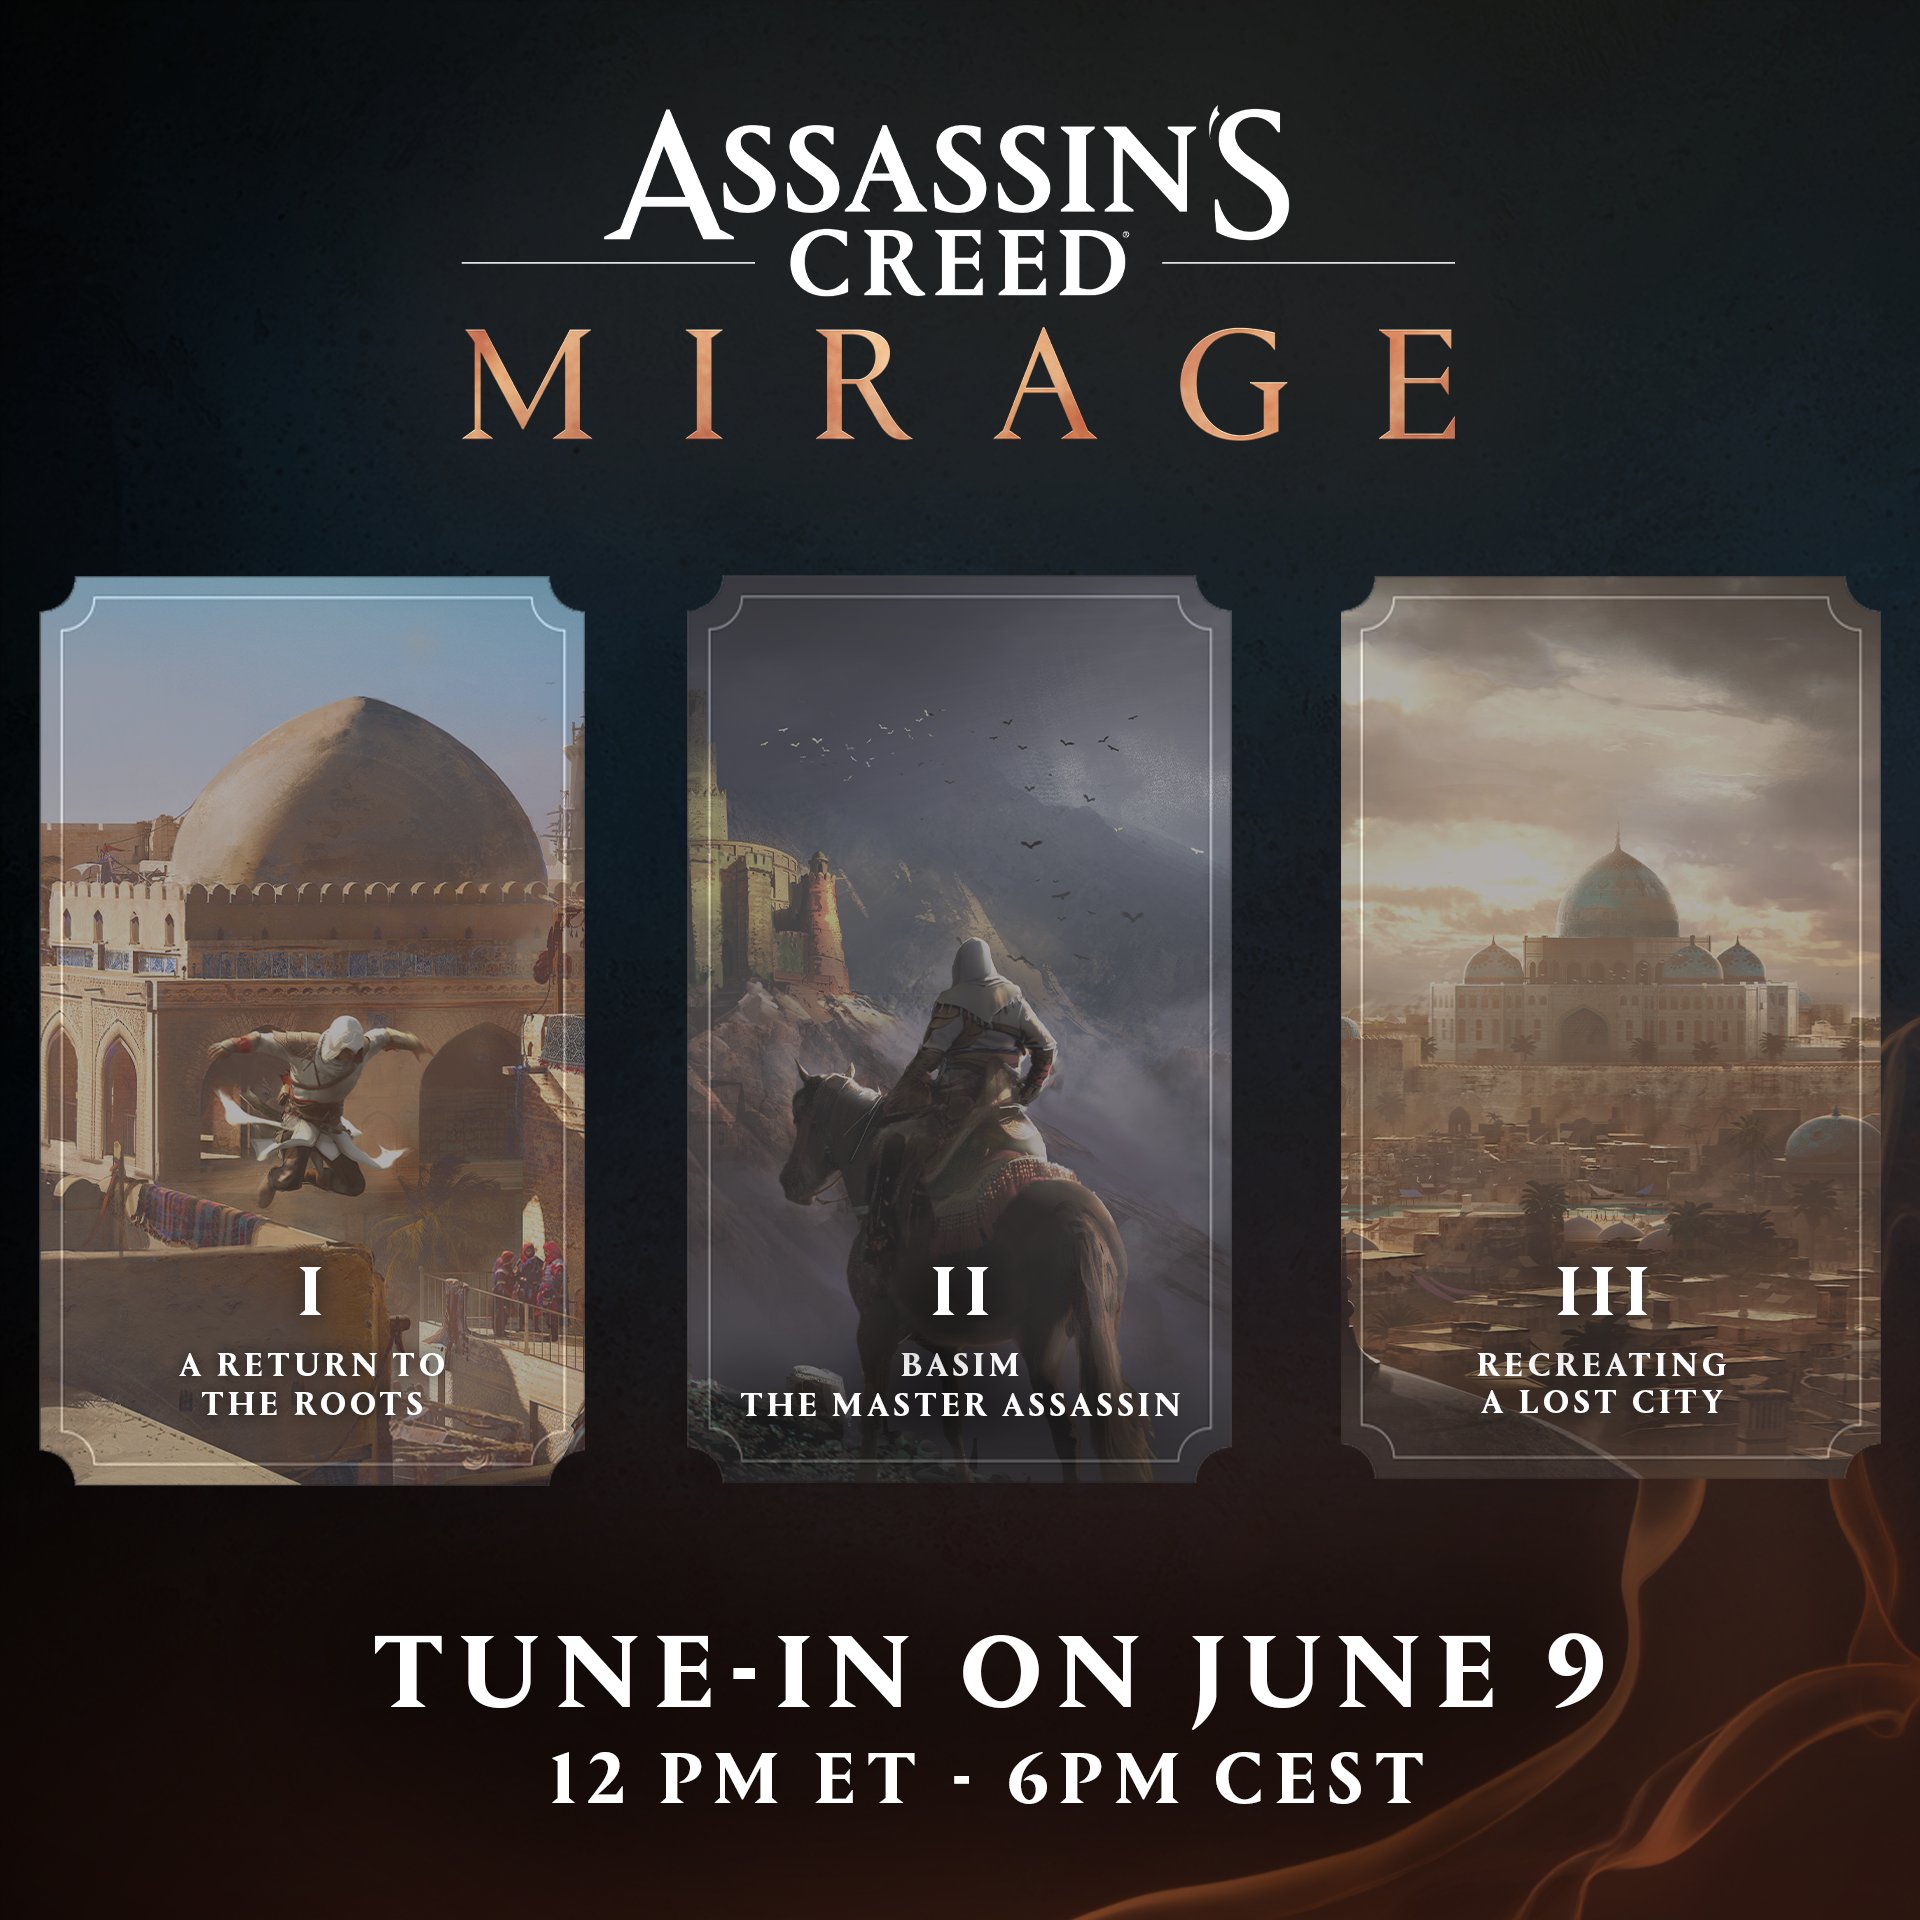 Assassin's Creed Mirage | Vaza vídeo com informações do desenvolvimento do novo título da Ubisoft